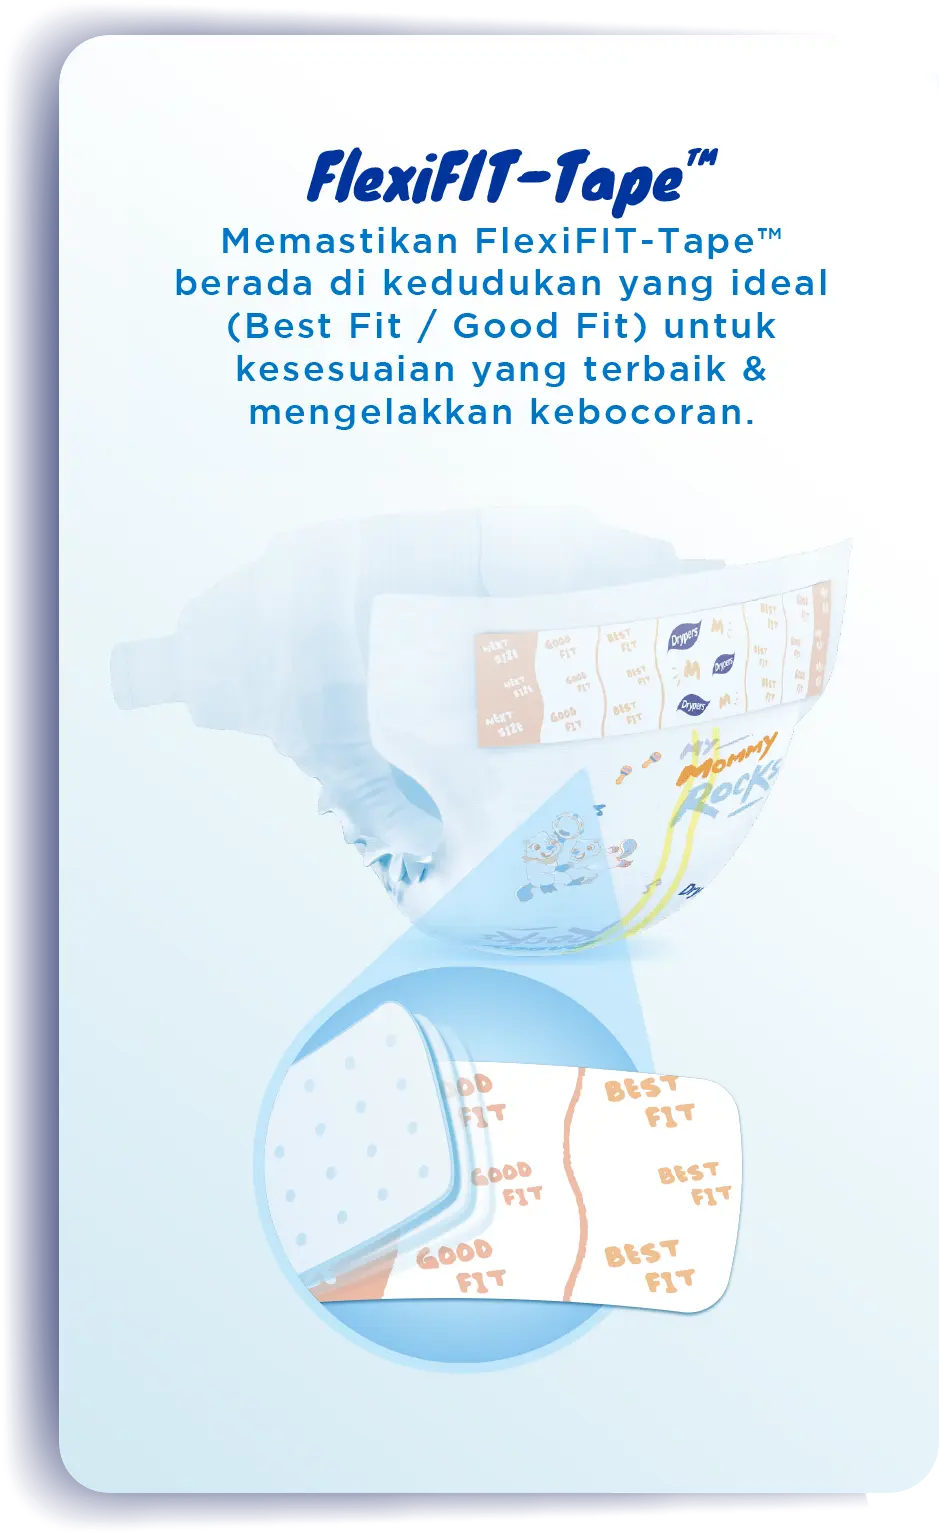 FlexiFIT-Tape™: Memastikan FlexiFIT-Tape™ berada di kedudukan yang ideal (Best Fit / Good Fit) untuk kesesuaian yang terbaik & mengelakkan kebocoran.